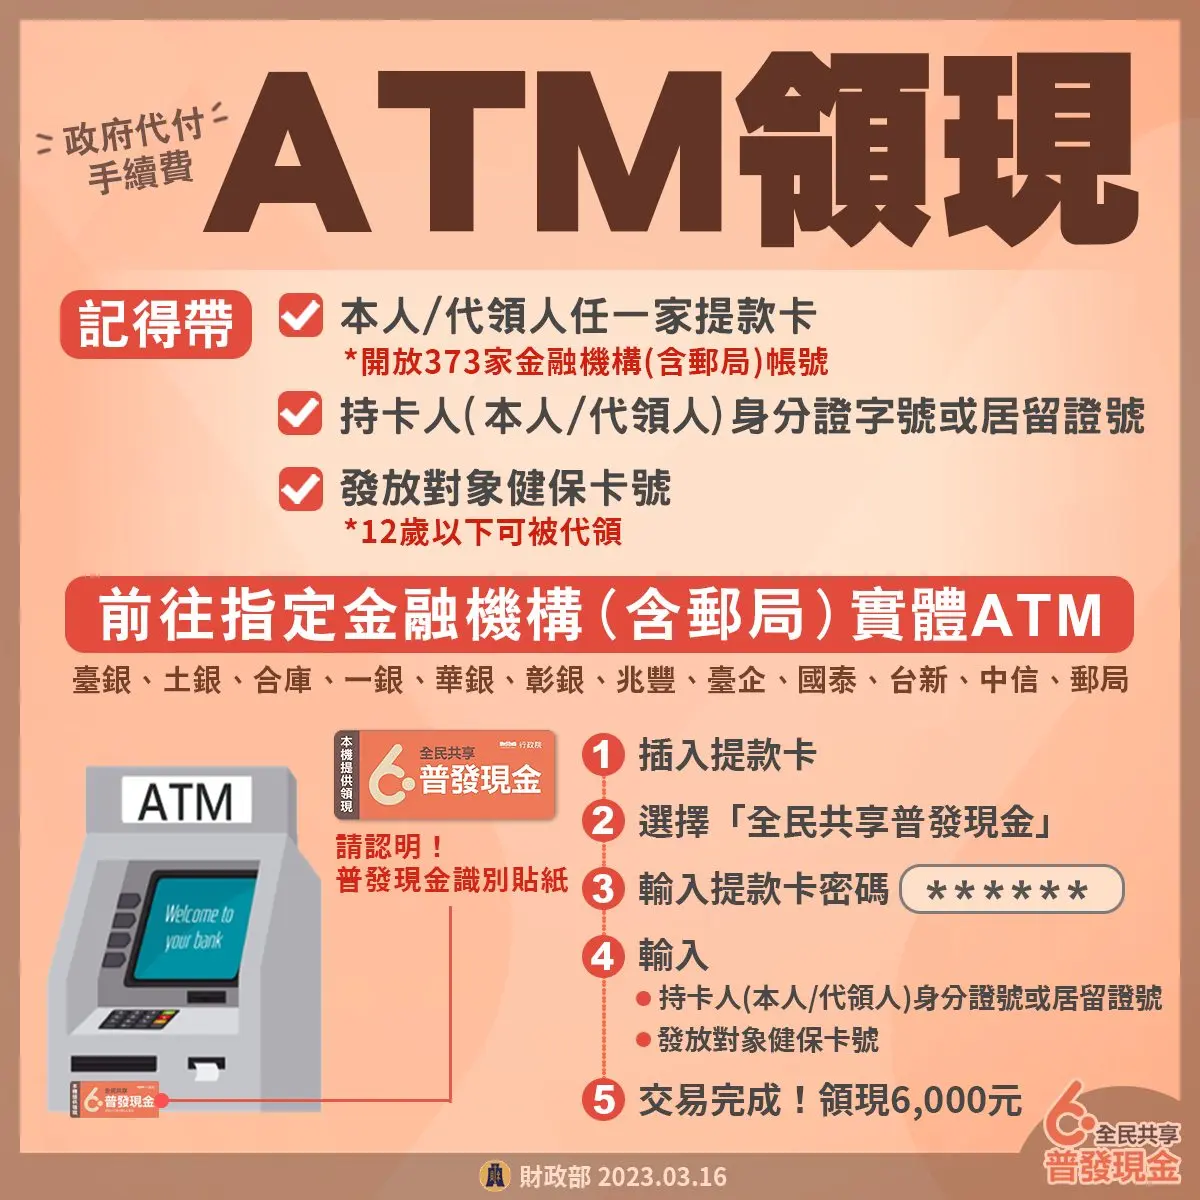 taiwan national cash 6000 yuan 2023 a4